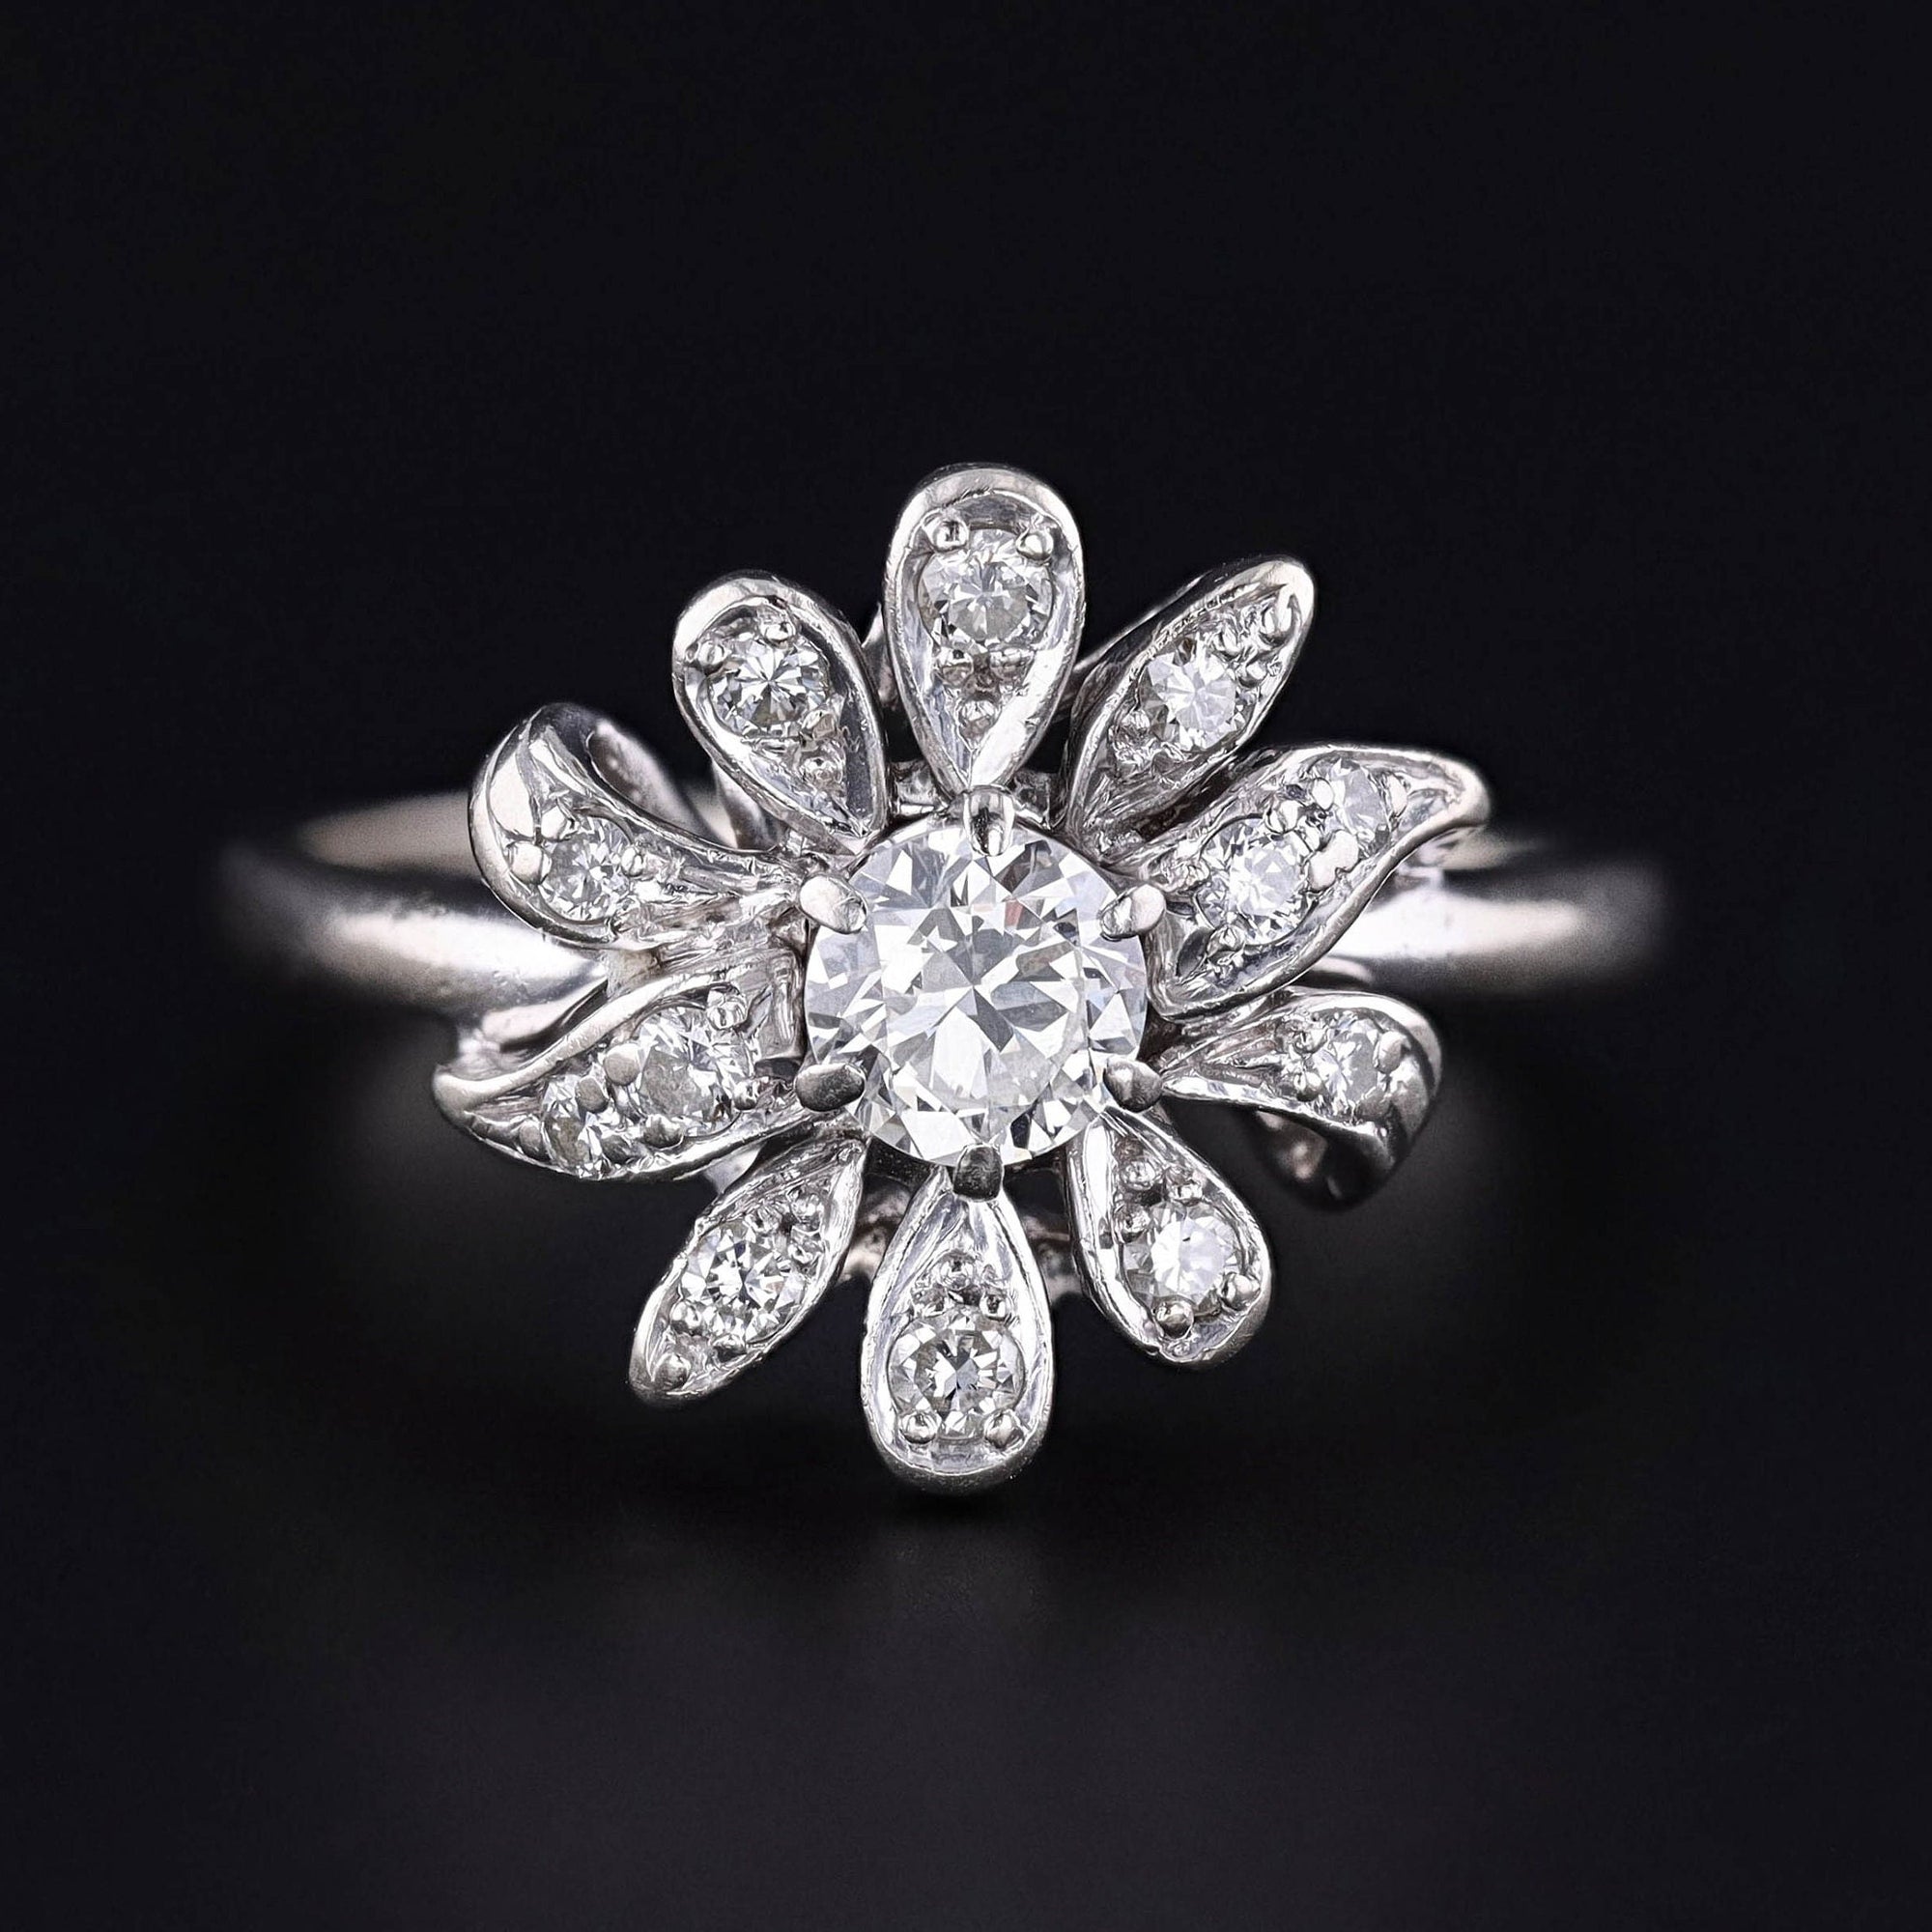 Vintage Diamond Flower Ring of 14k White Gold